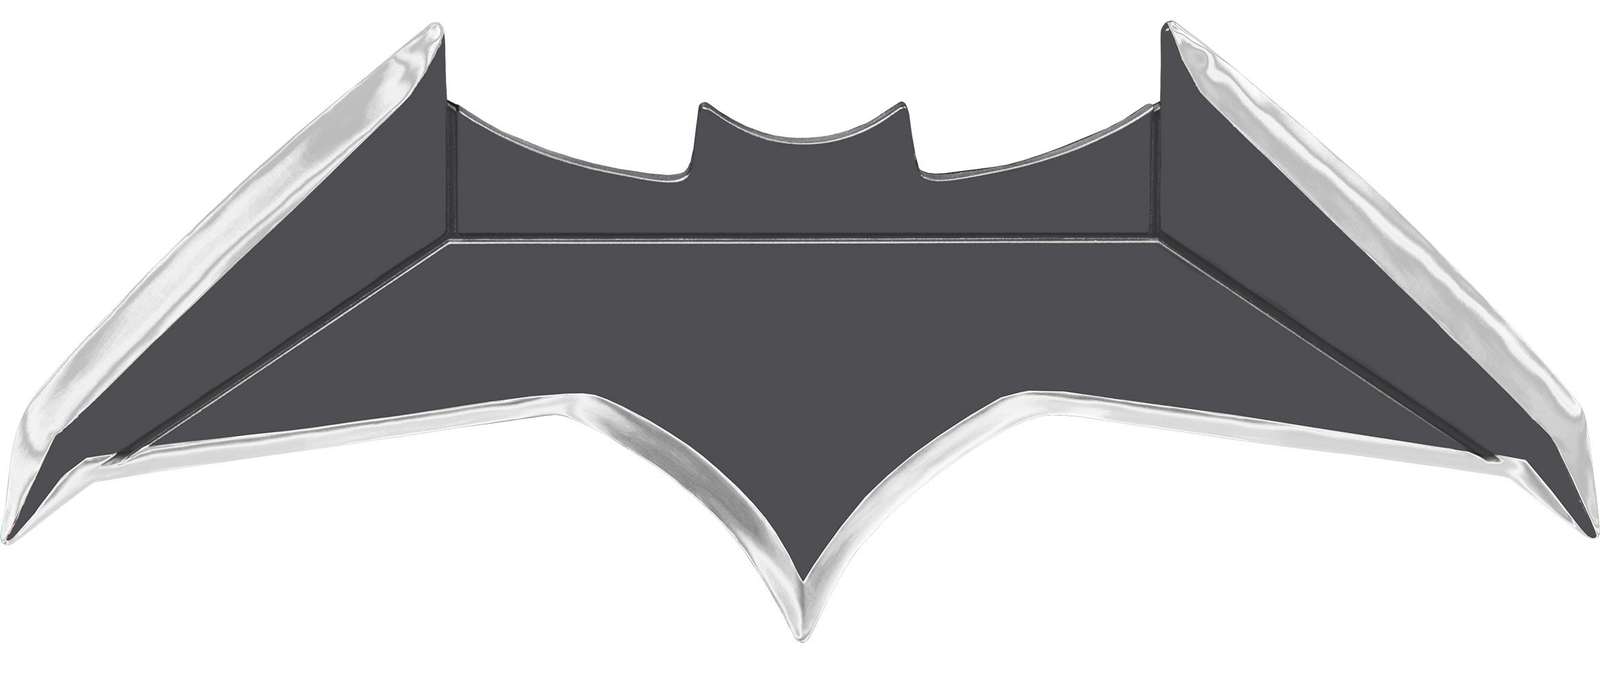 Batarang puzzle en ligne à partir d'une photo